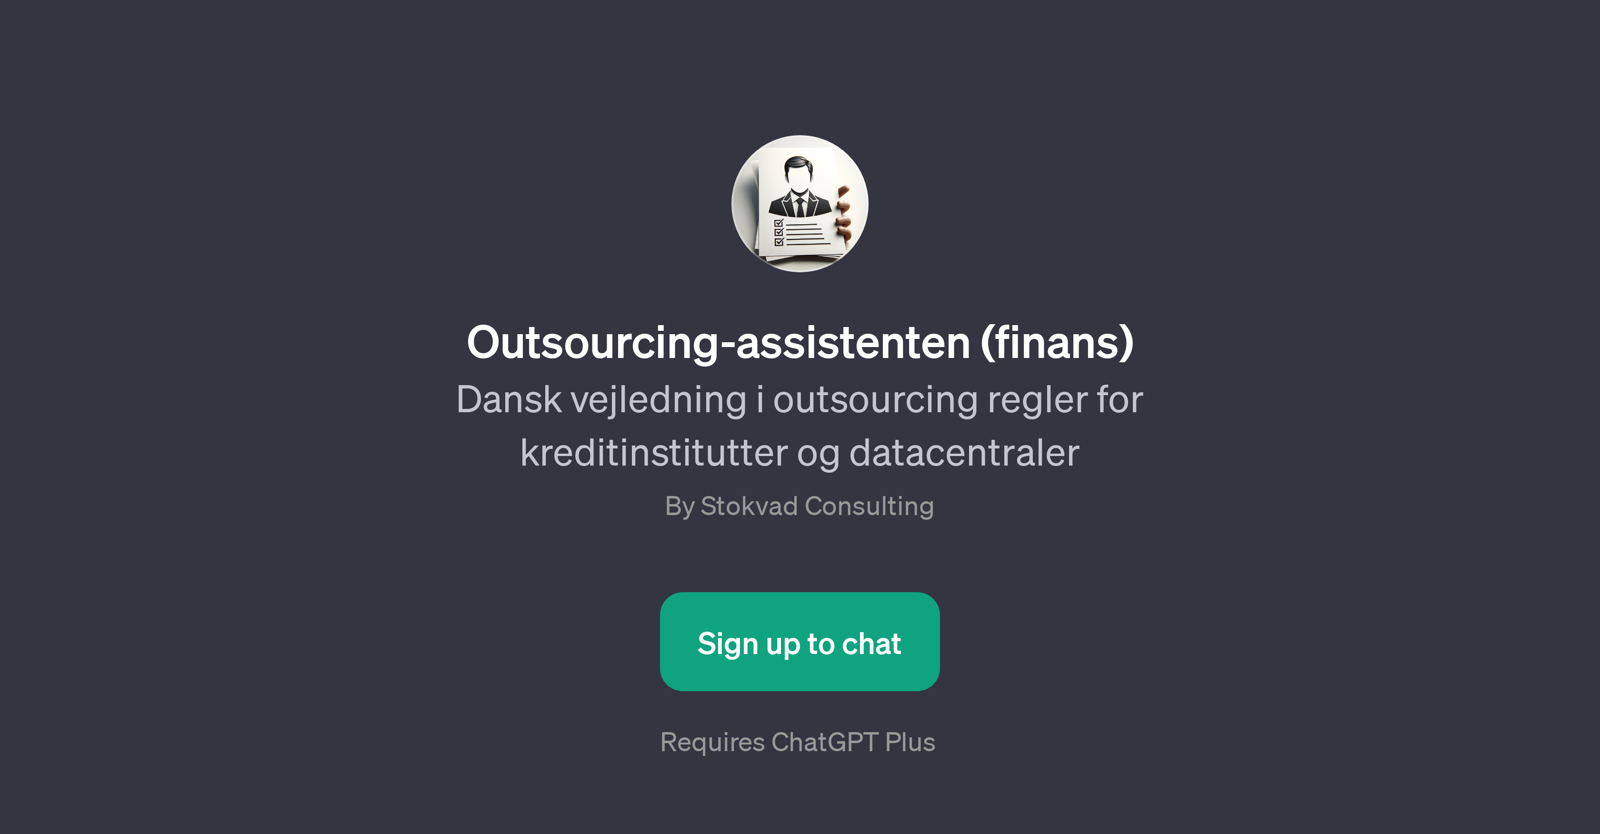 Outsourcing-assistenten (finans) website